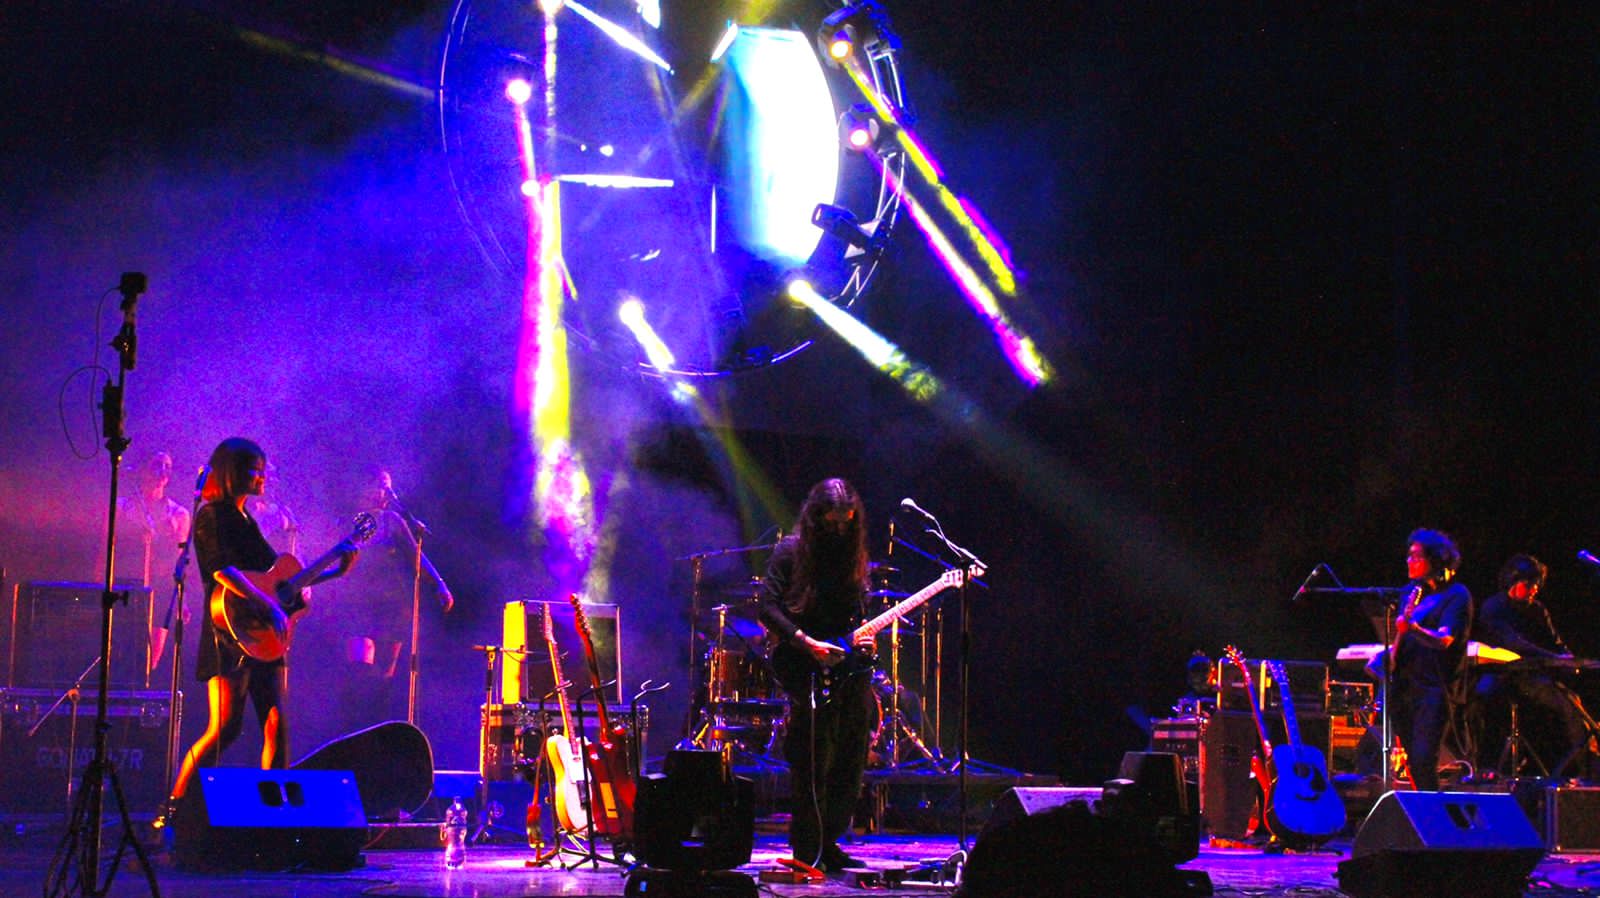 Llega a Tlaxcala por primera vez el exitoso espectáculo “A Tribute To Pink Floyd”, interpretado por In The Flesh